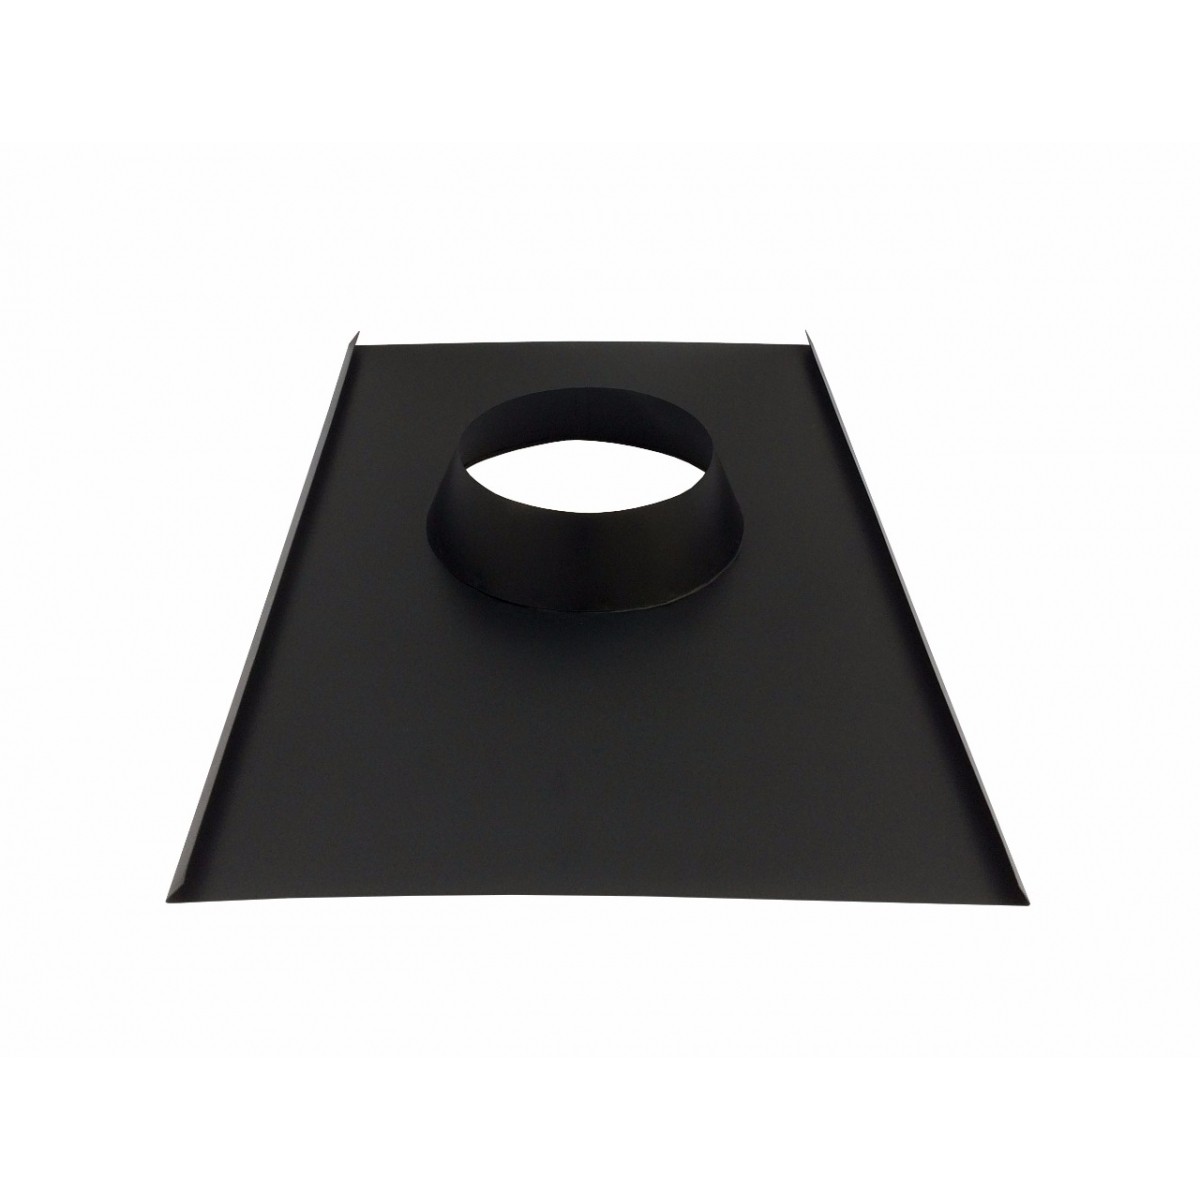 Rufo colarinho de telhado preto para chaminé de 250 mm de diâmetro  - Galvocalhas